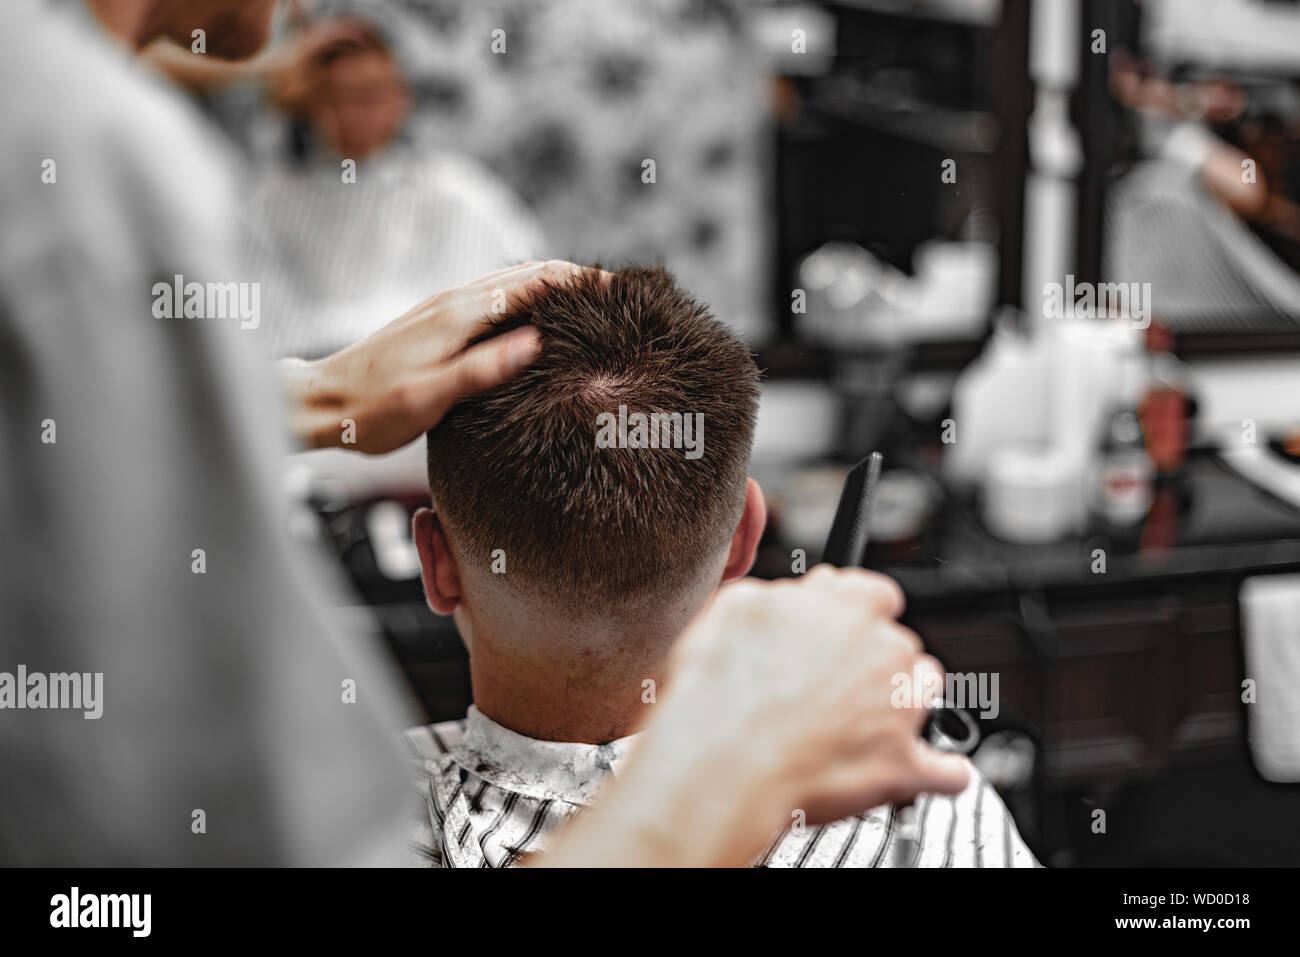 Un barbero usa cortadoras de oro para cortar la barba de un hombre en una  barbería